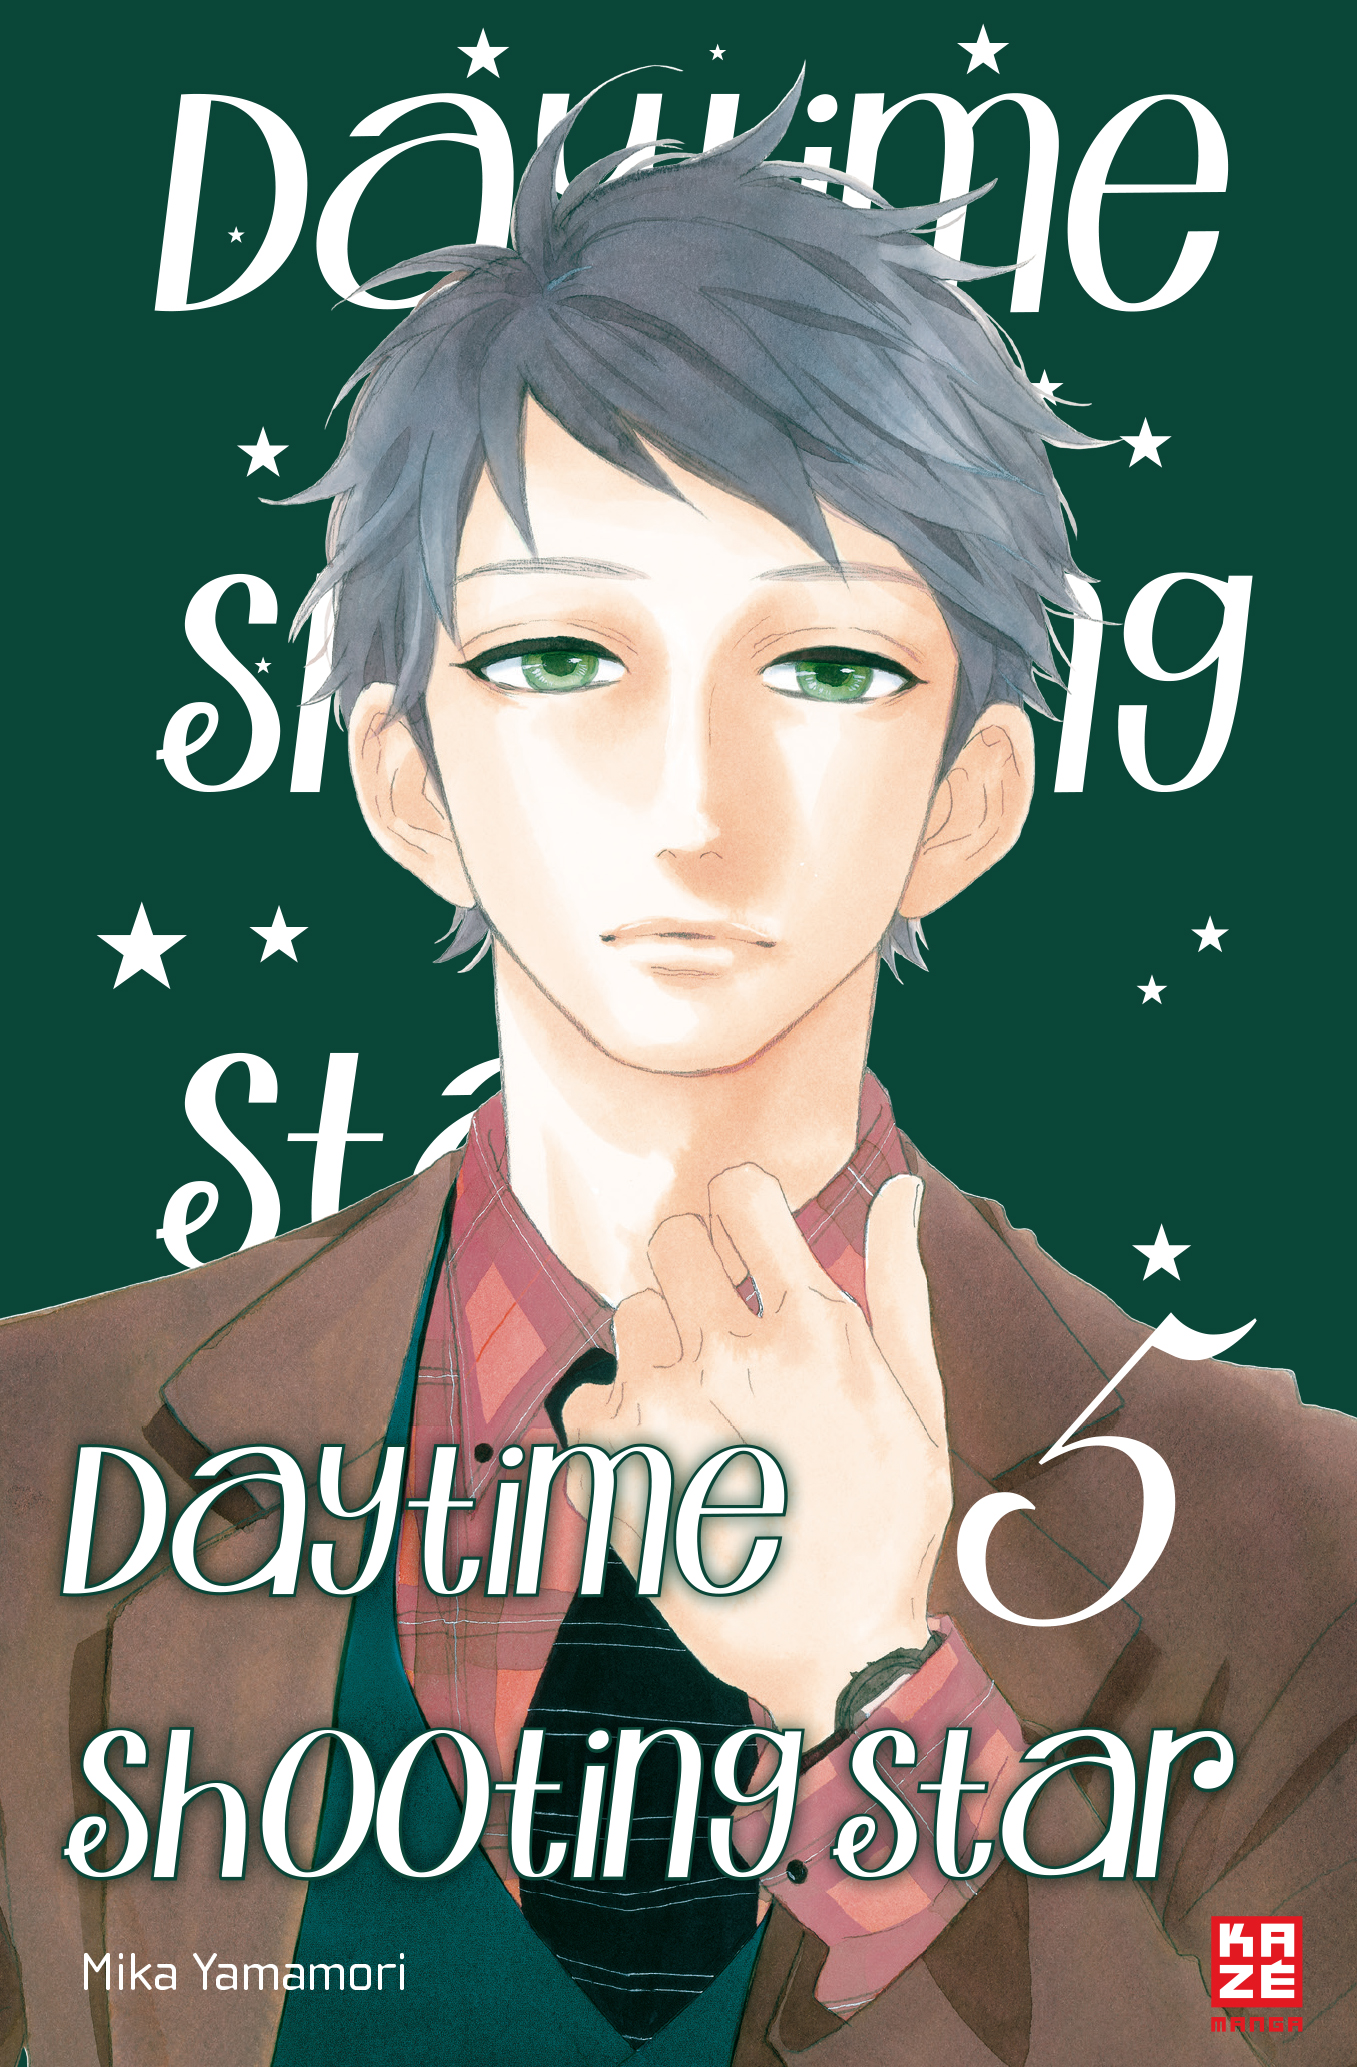 – Shooting Daytime Star 5 Band